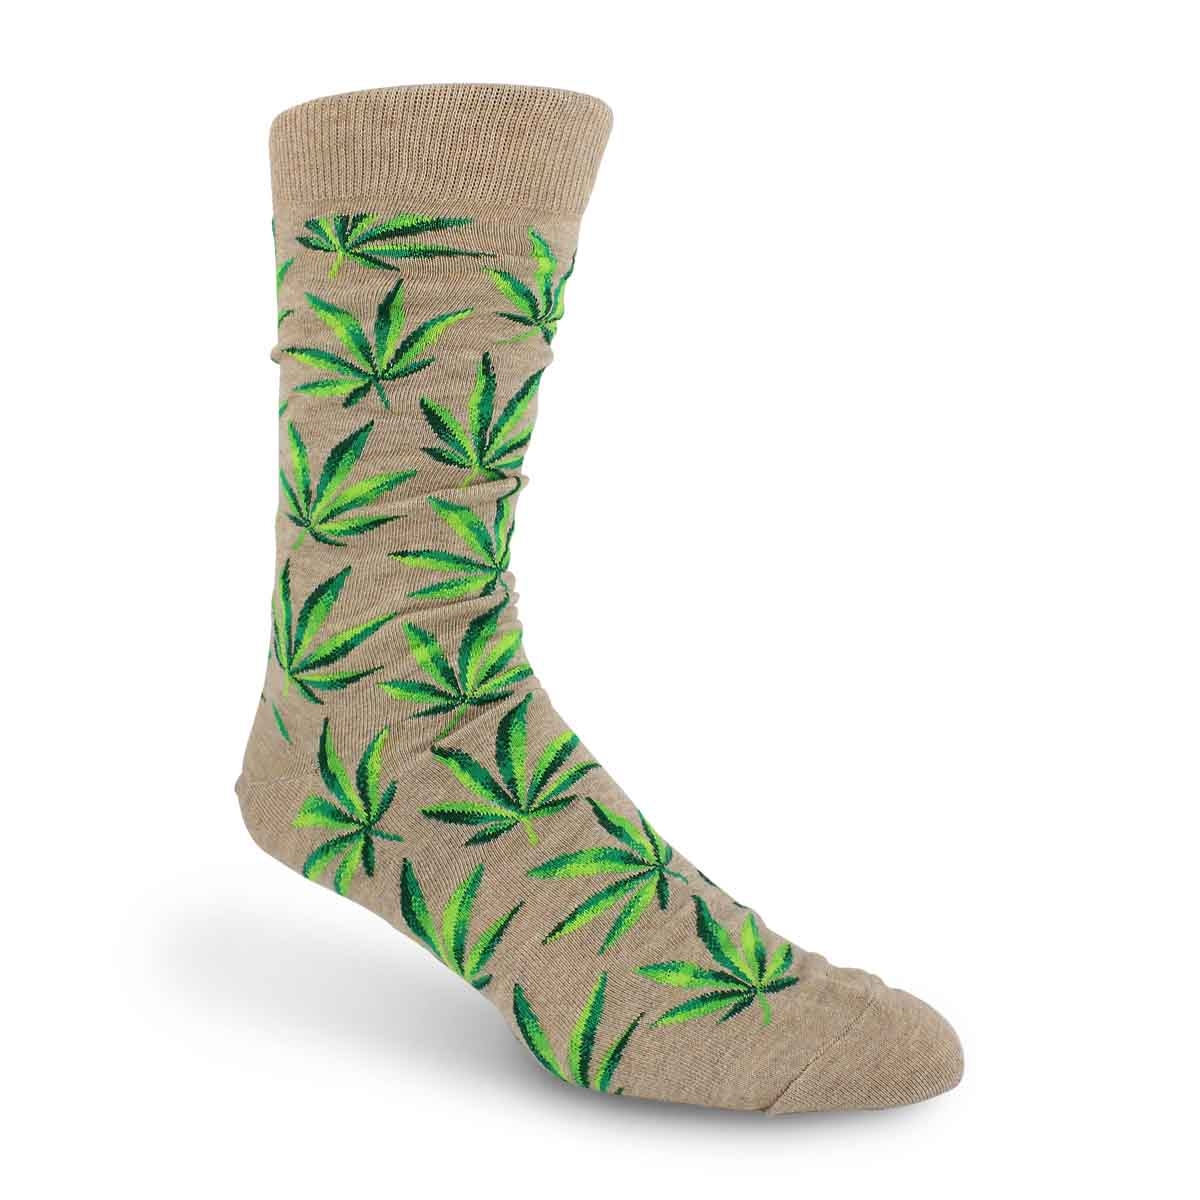 Hot Sox Men's Marijuana Sock - Hemp Printed | SoftMoc.com